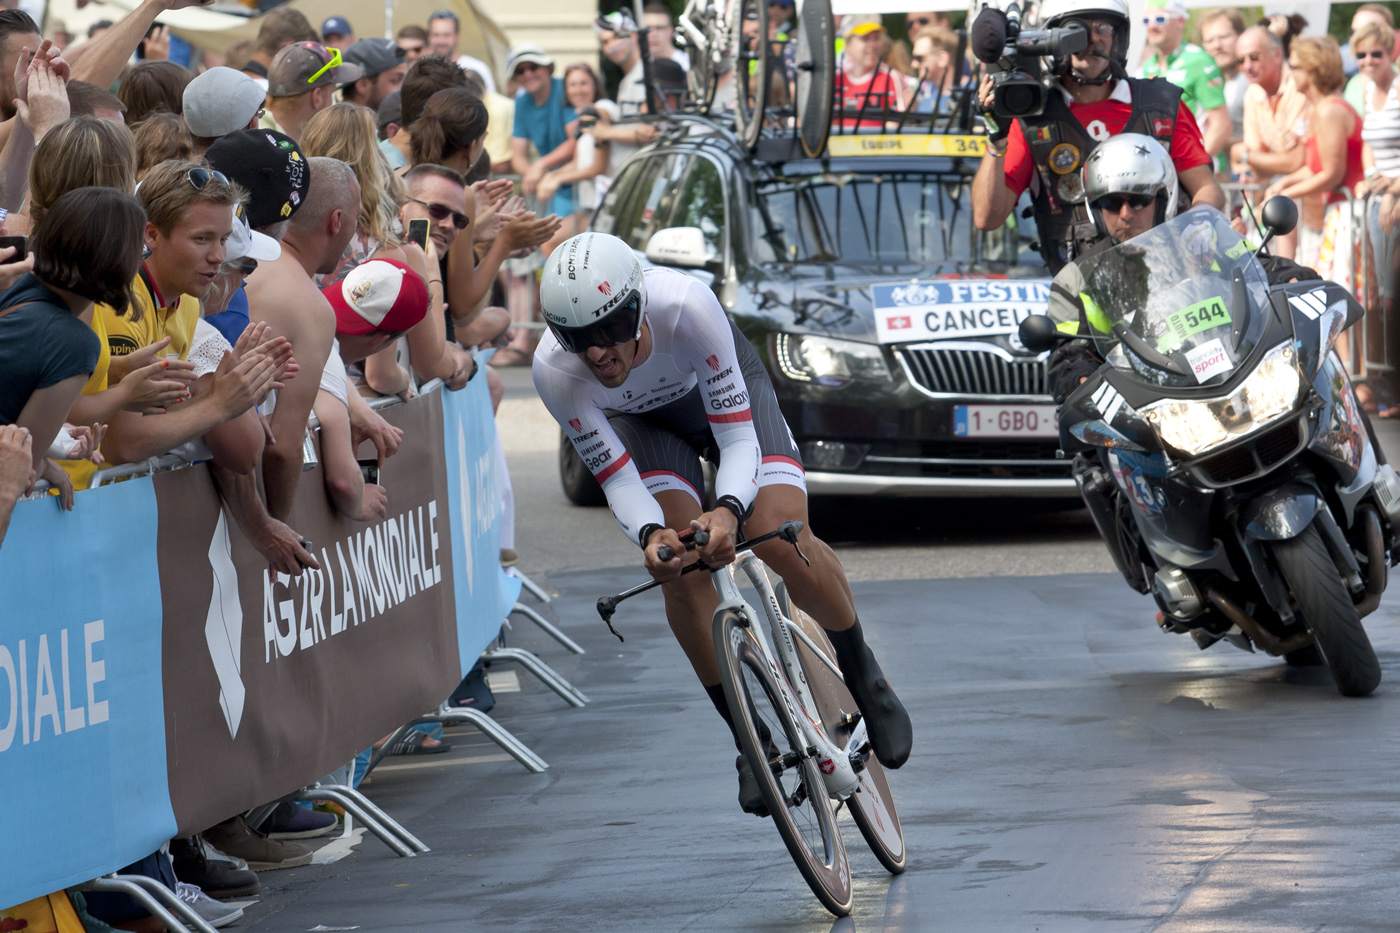 tour france 2015 pictures3 Tour de France 2015 in Pictures